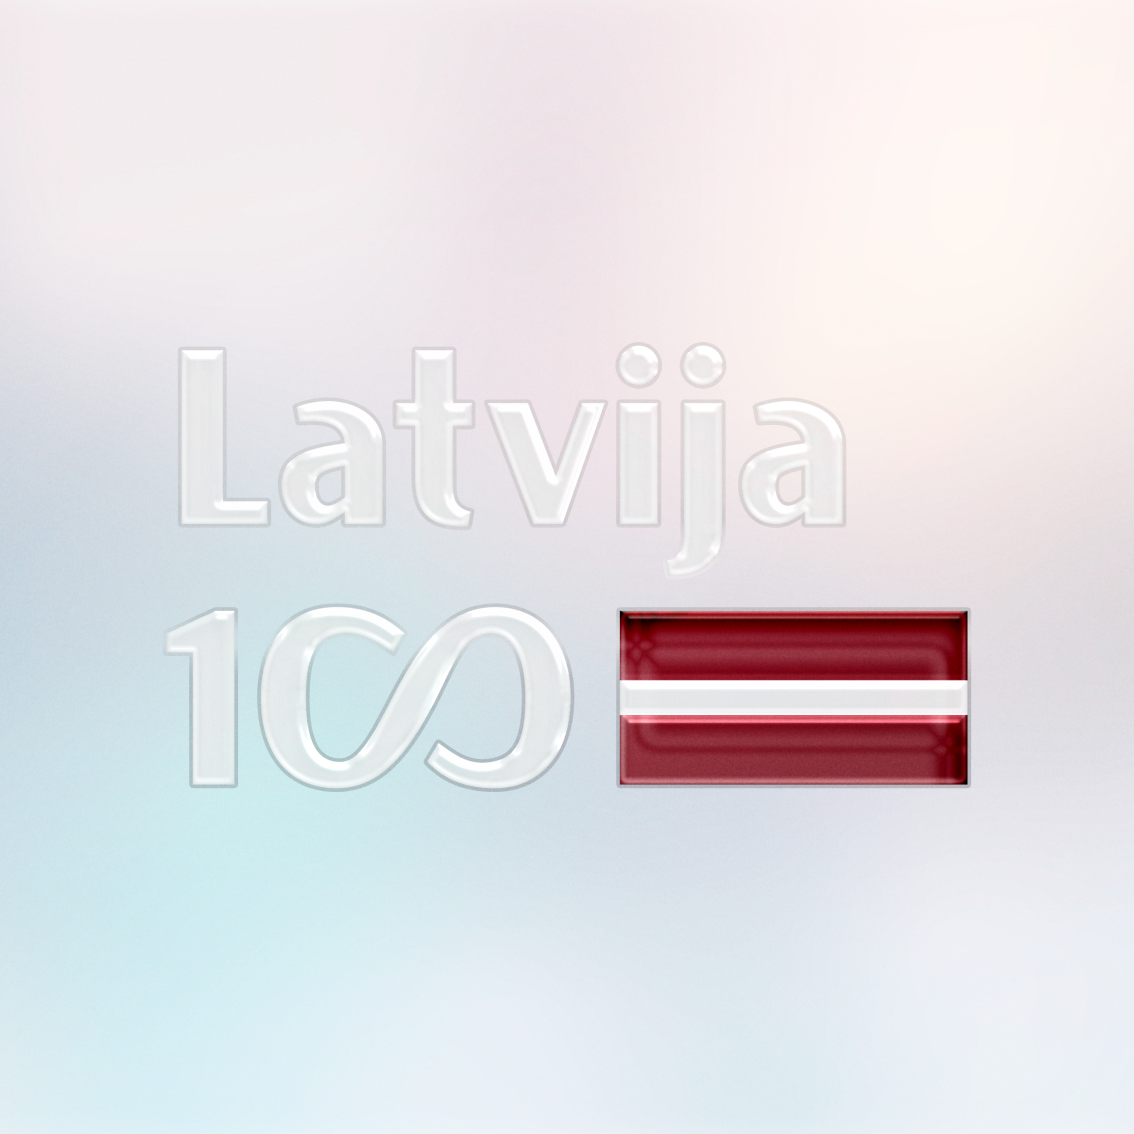 attēla pamatfons ir vieglos pasteļtoņos uz kura attēlota UV DTF uzlīme ar lakas pārklājumu. Uzlīmei ir redzams lakas reljefs. Uzlīme ir karoga formā ar Latvijas karoga krāsām. Uzraksts baltā krāsā Latvija. Apakšējā rindā 100 gades simbolika ar nelielu arodziņu.